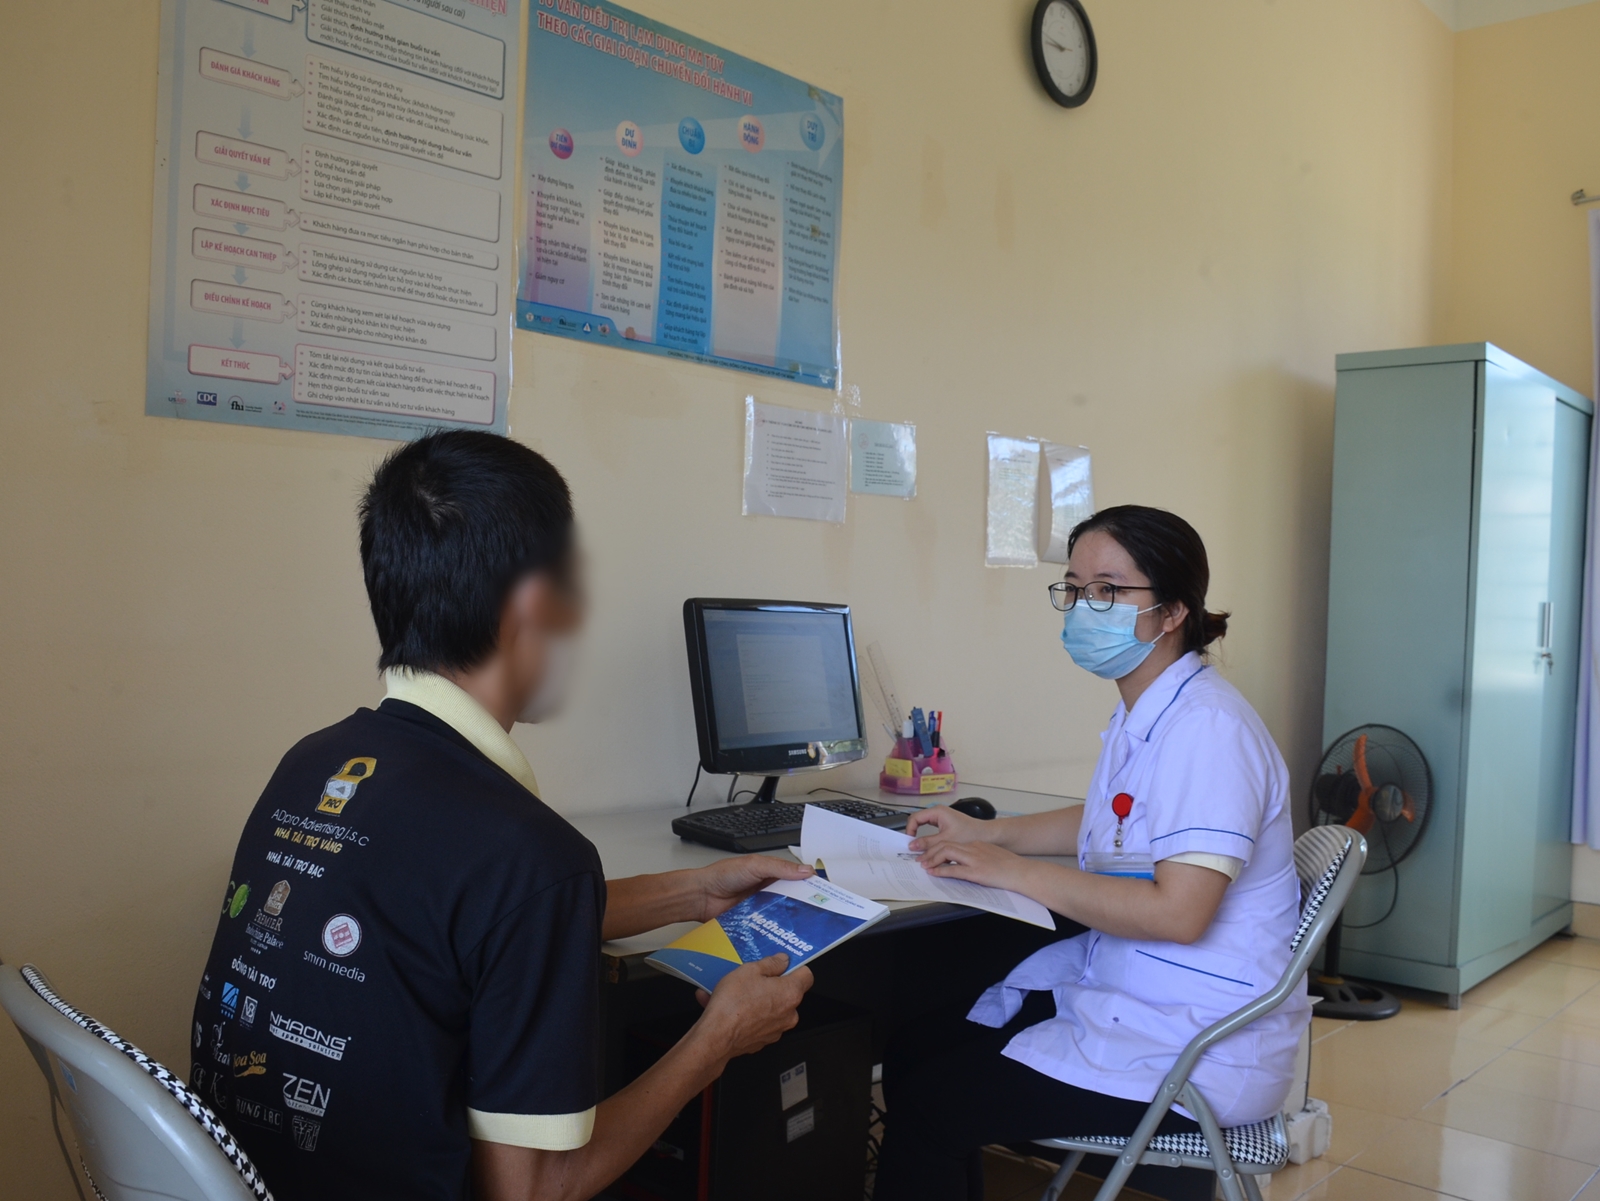 Y sĩ Ngô Thị Hải Ninh đang tư vấn cho bệnh nhân uống thuốc methadone tại cơ sở